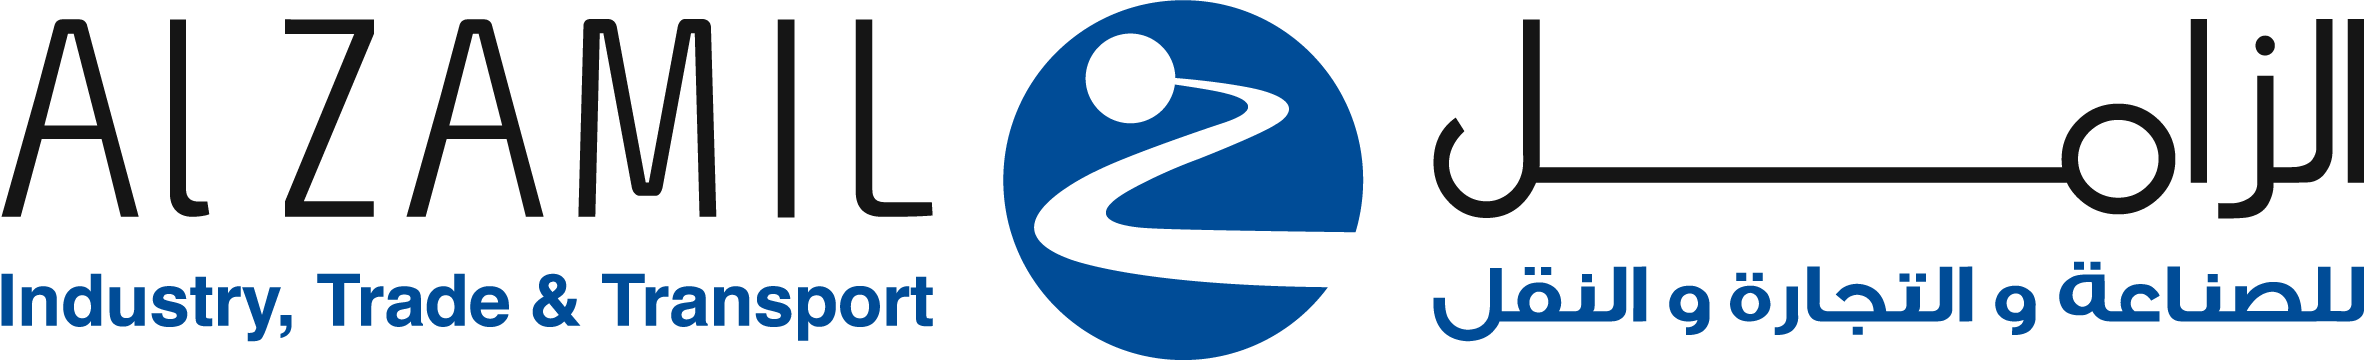 al-zamil-logo